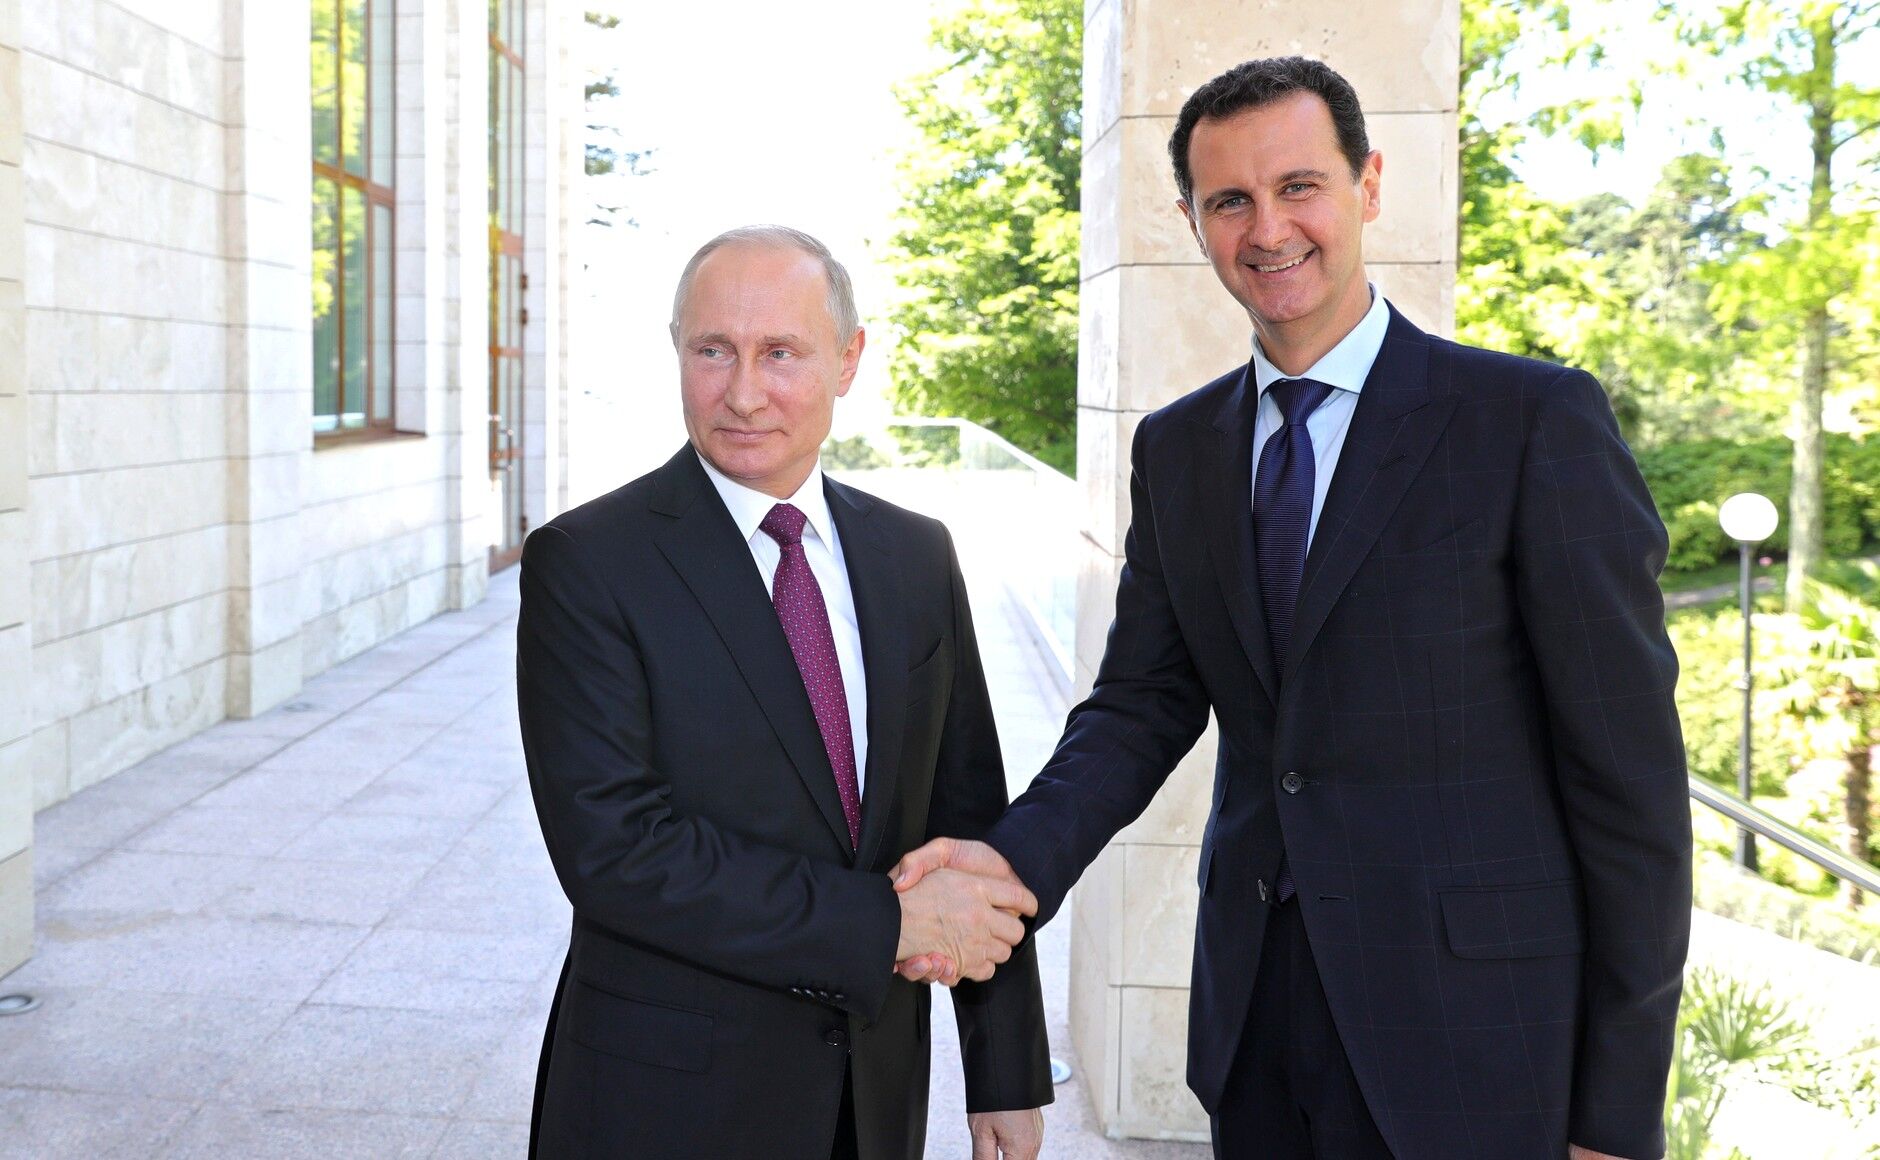 Росія піде з Сирії? Путін зустрівся з Асадом: про що говорили